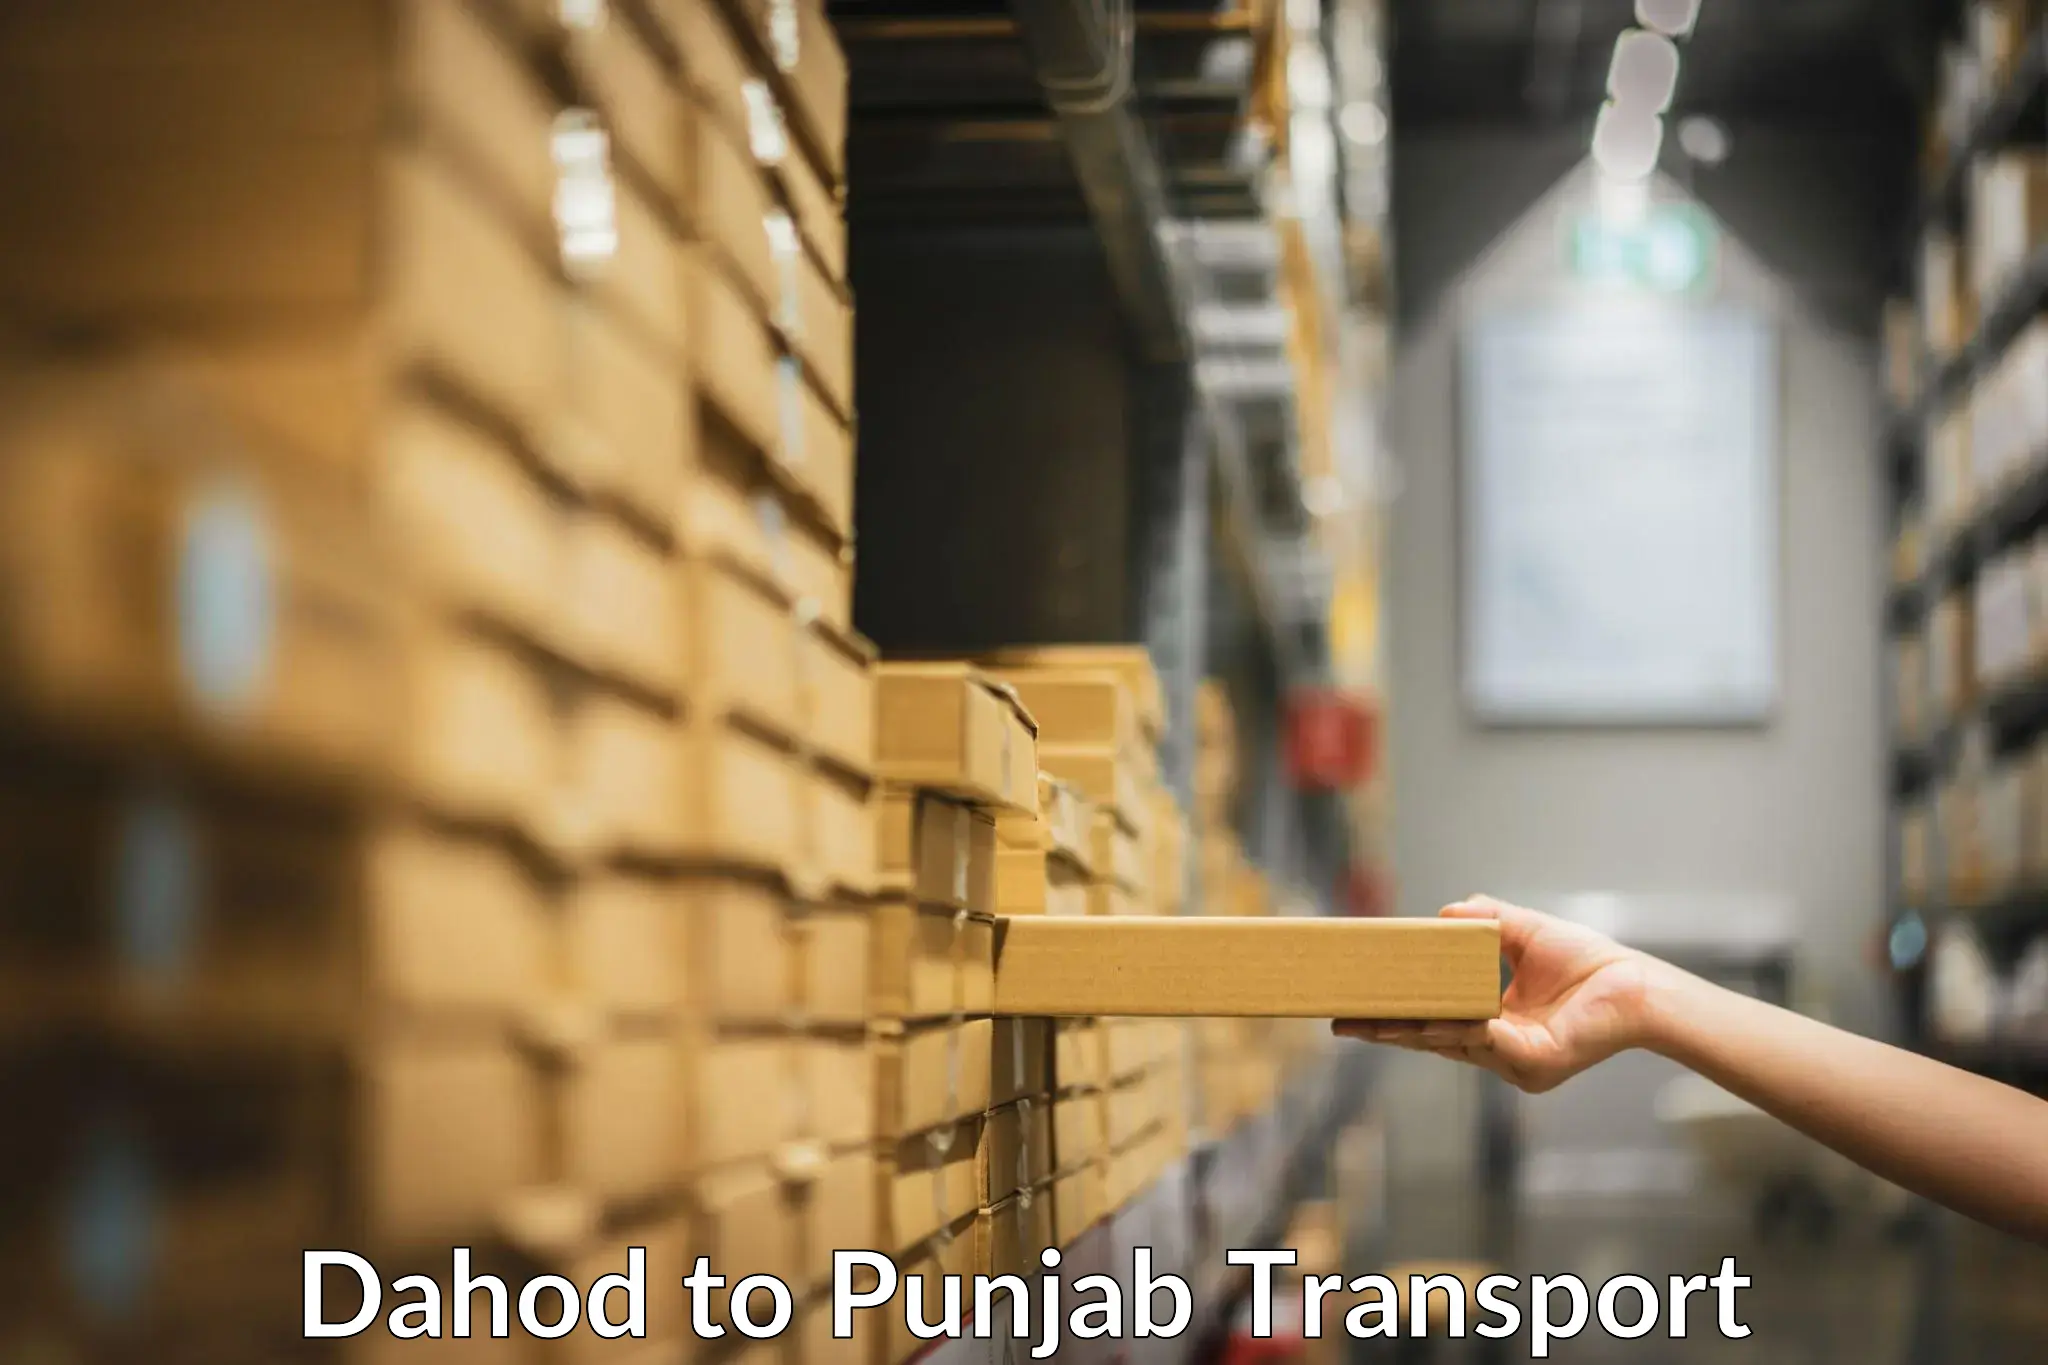 International cargo transportation services Dahod to Kotkapura